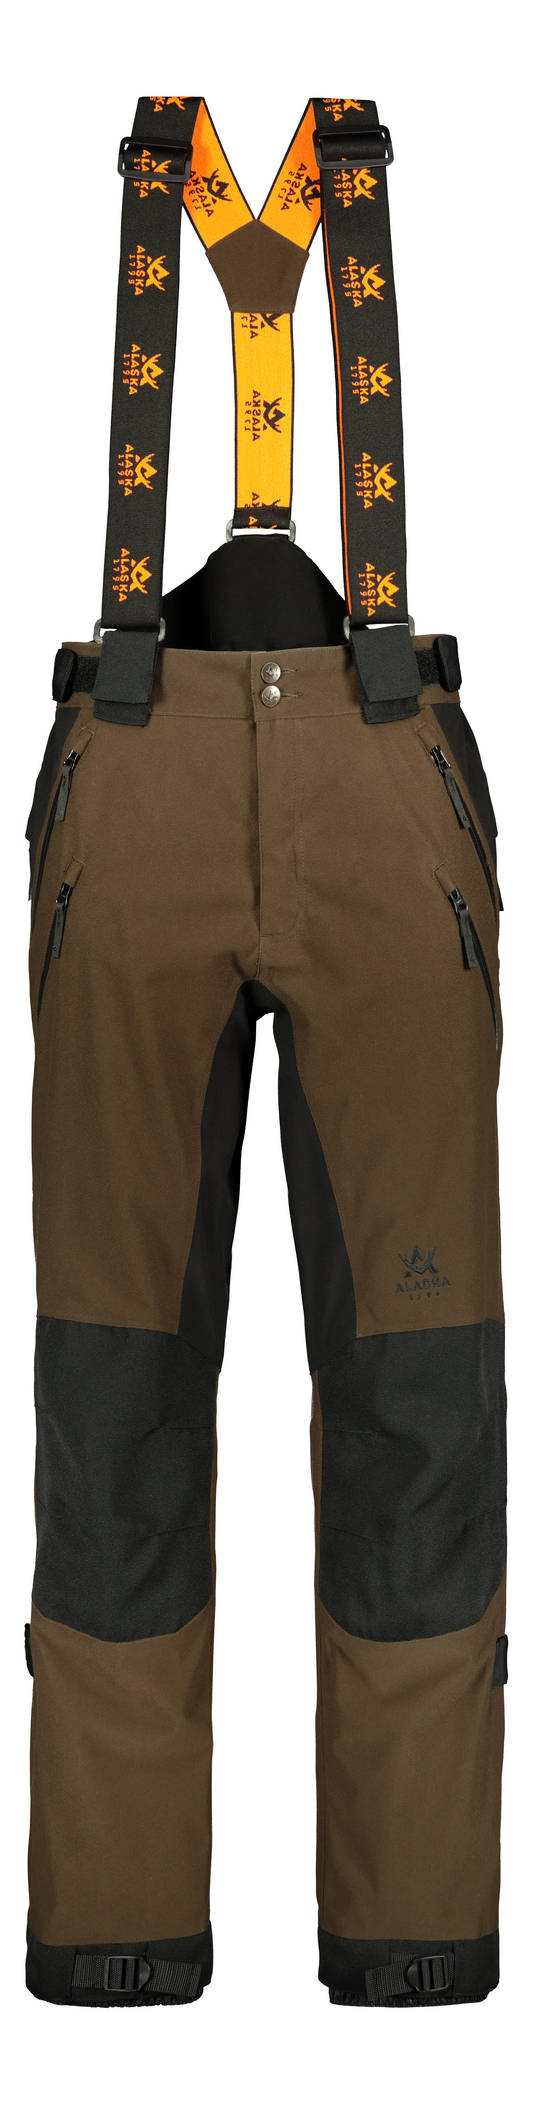 Predator Men's Trousers, Brown/Black